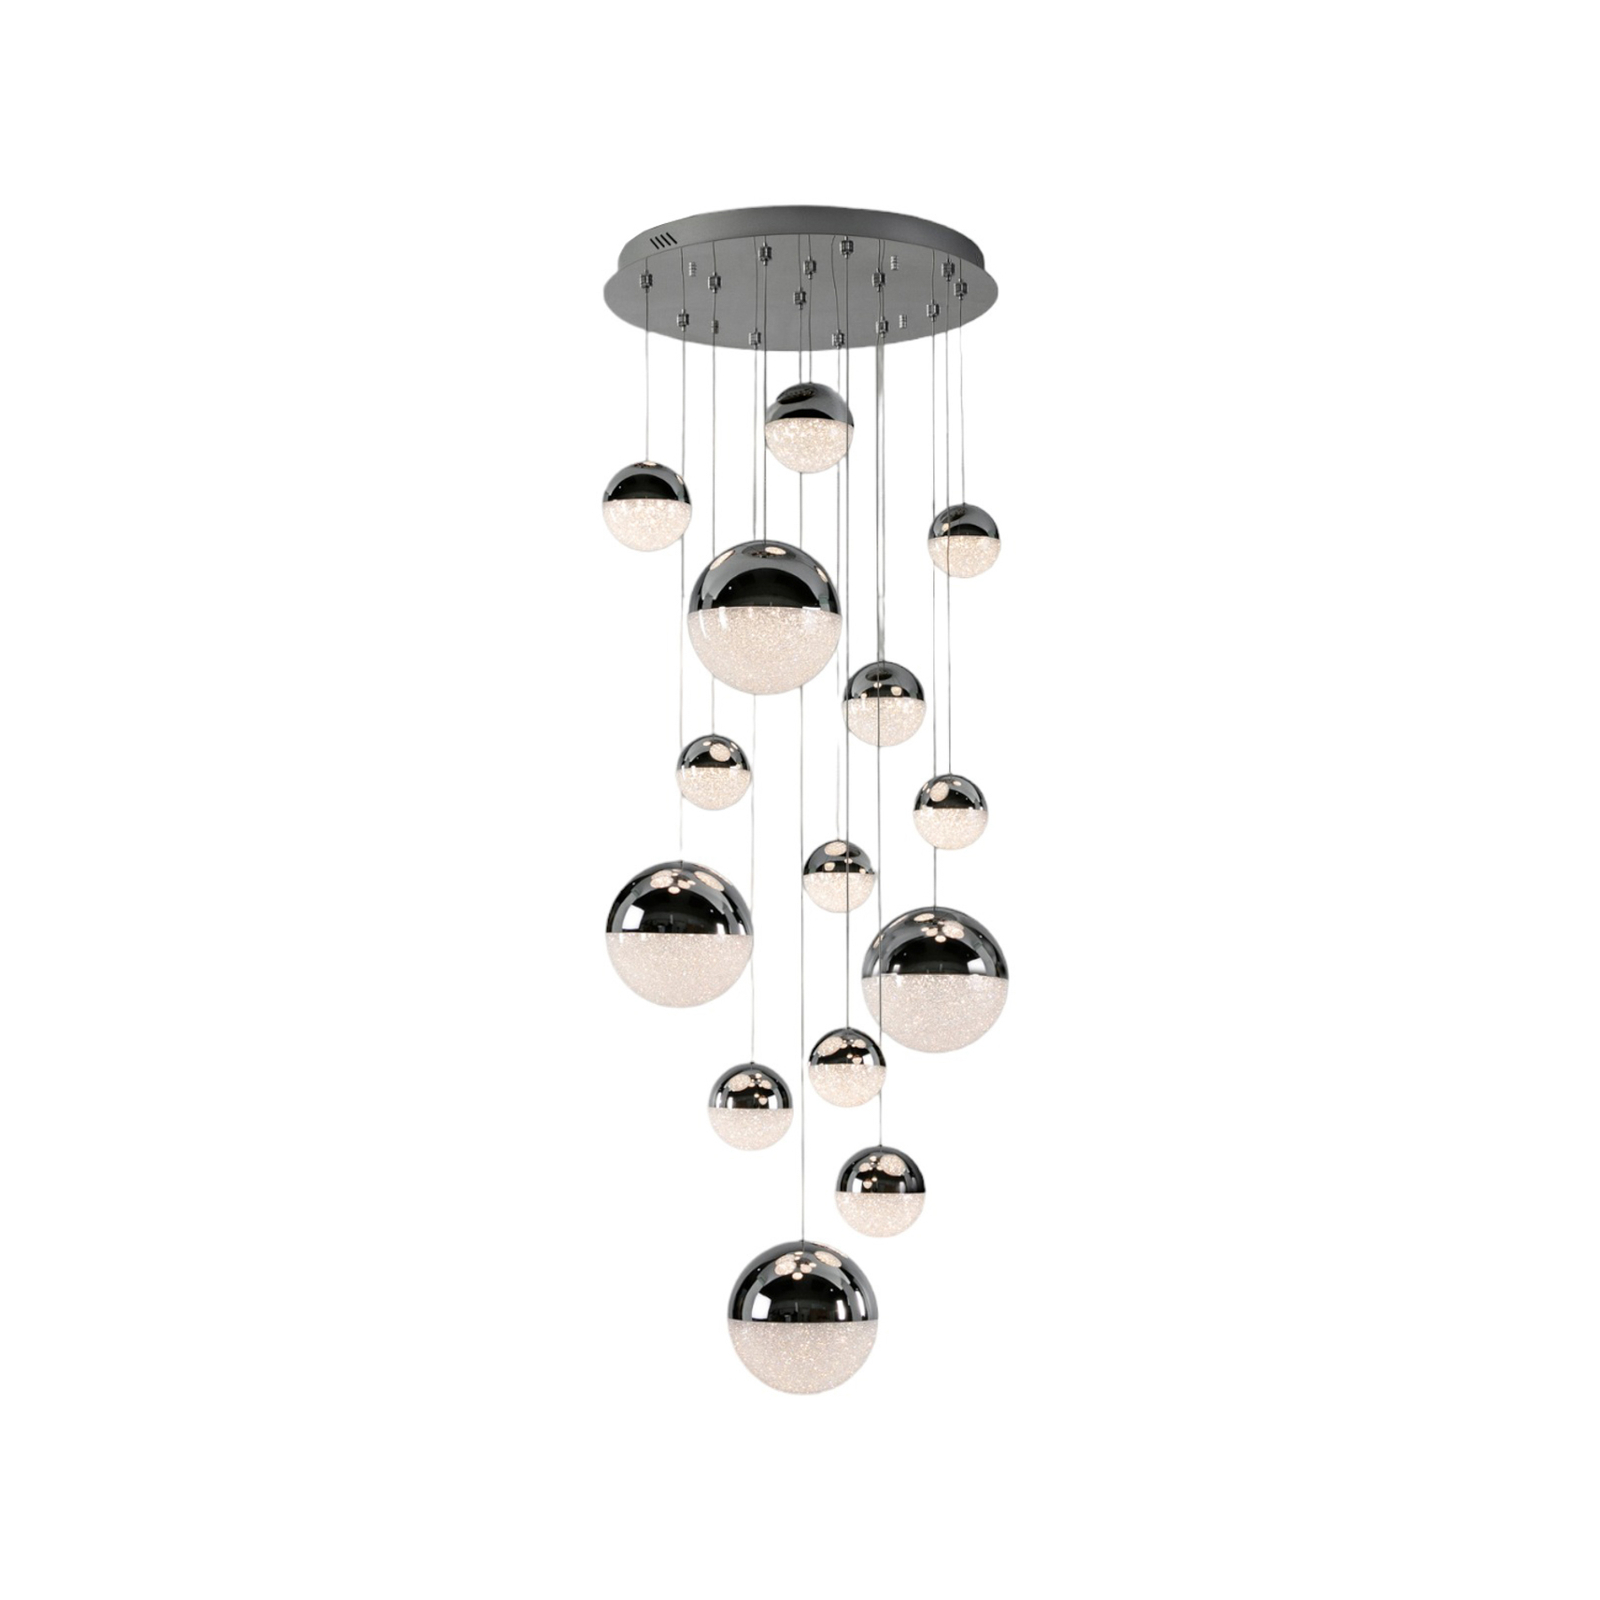 LED hanglamp Sphere, chroom/helder 14-lamps app